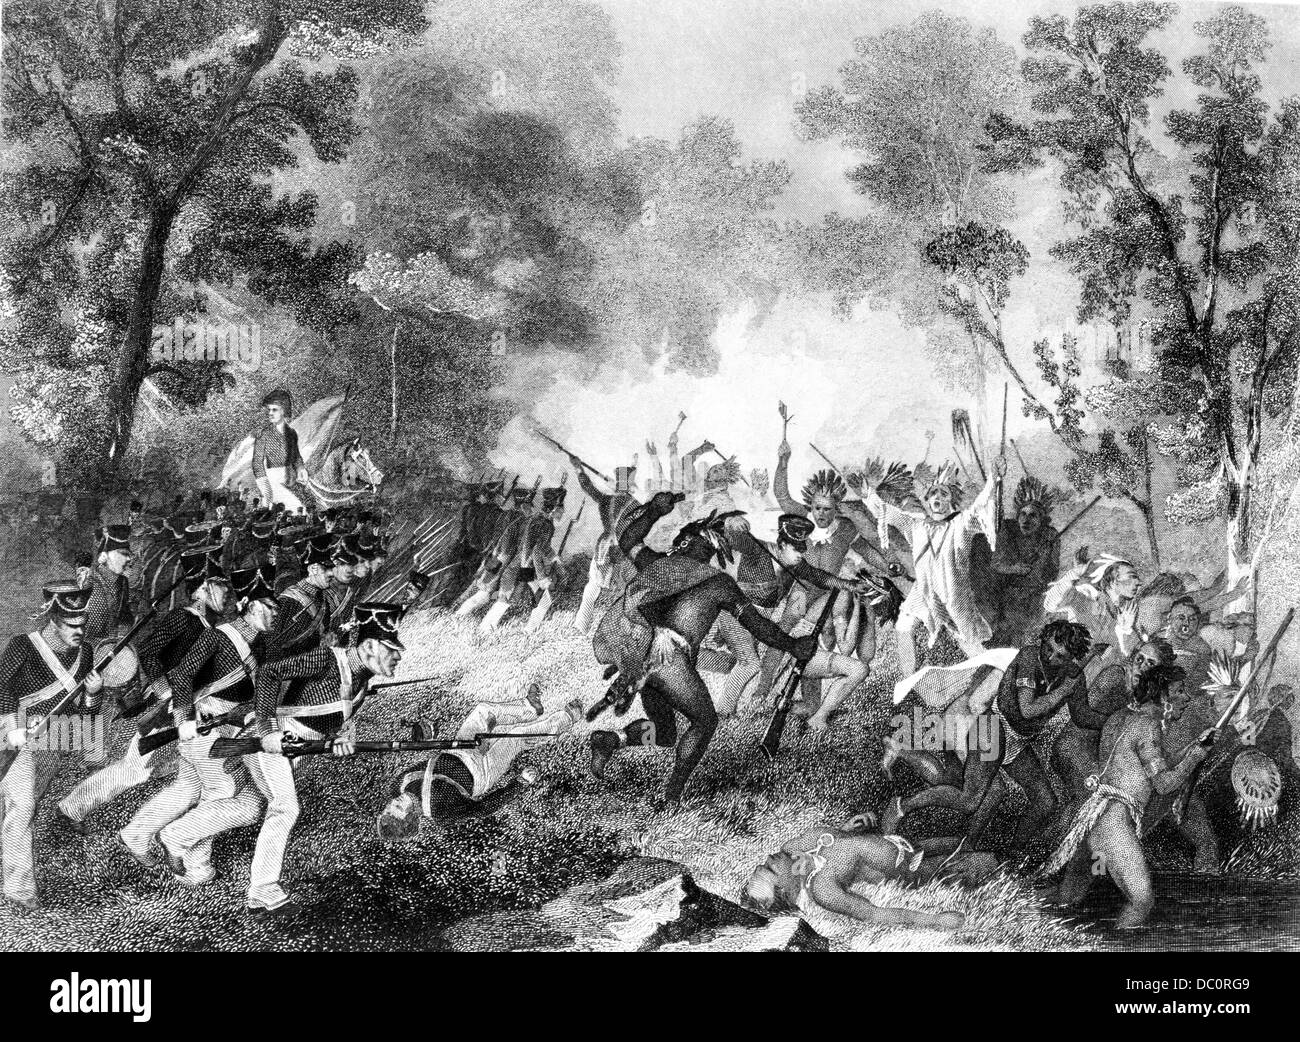 1800s 1810s TECUMSEH'S WAR LA BATAILLE DE TIPPECANOE 6 14 novembre 1811 le général William Henry Harrison LES INDIENS DE ROUTAGE Banque D'Images